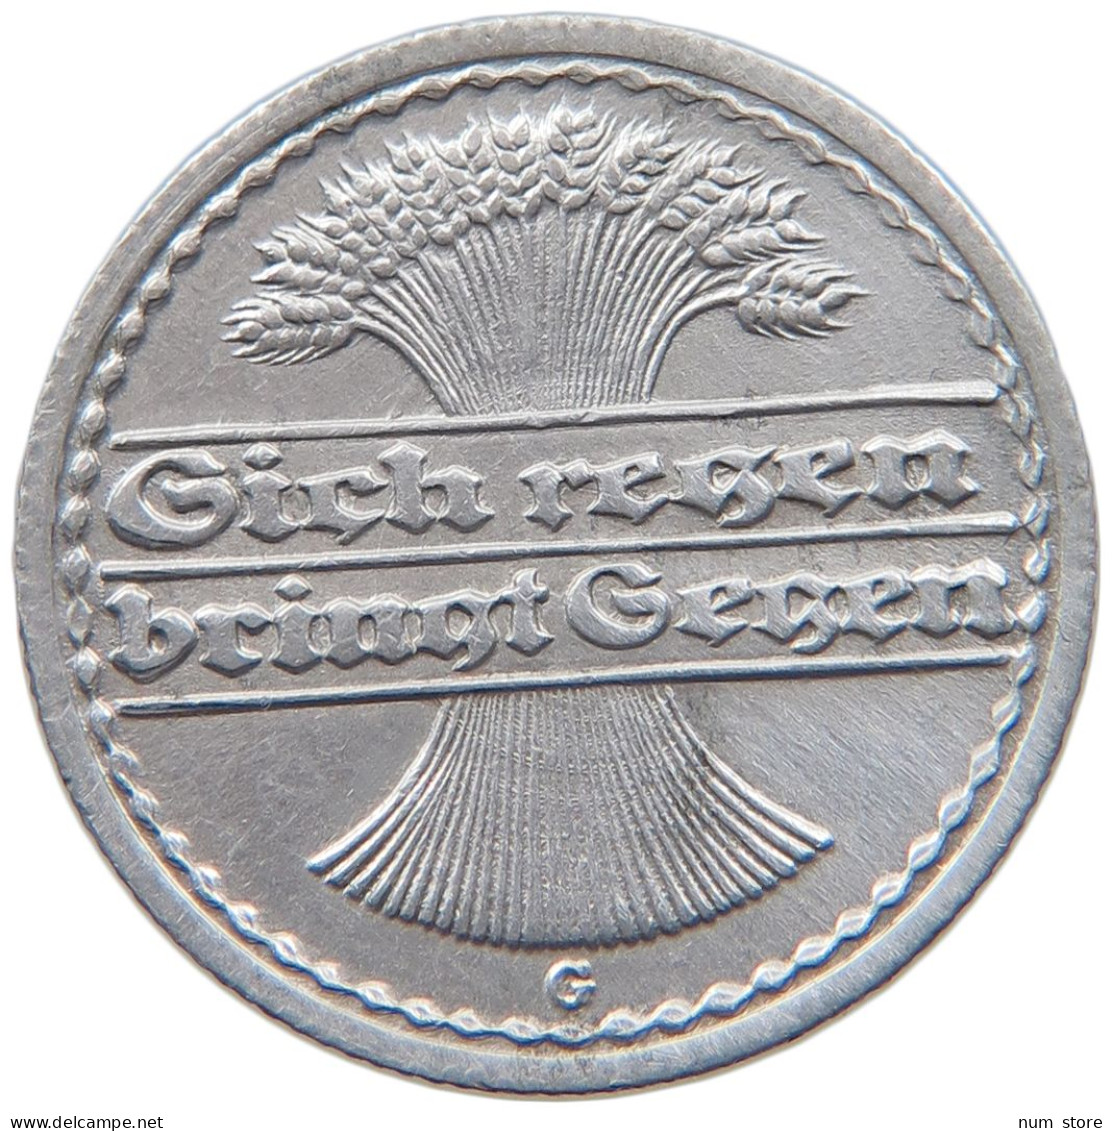 WEIMARER REPUBLIK 50 PFENNIG 1920 G  #MA 098831 - 50 Rentenpfennig & 50 Reichspfennig